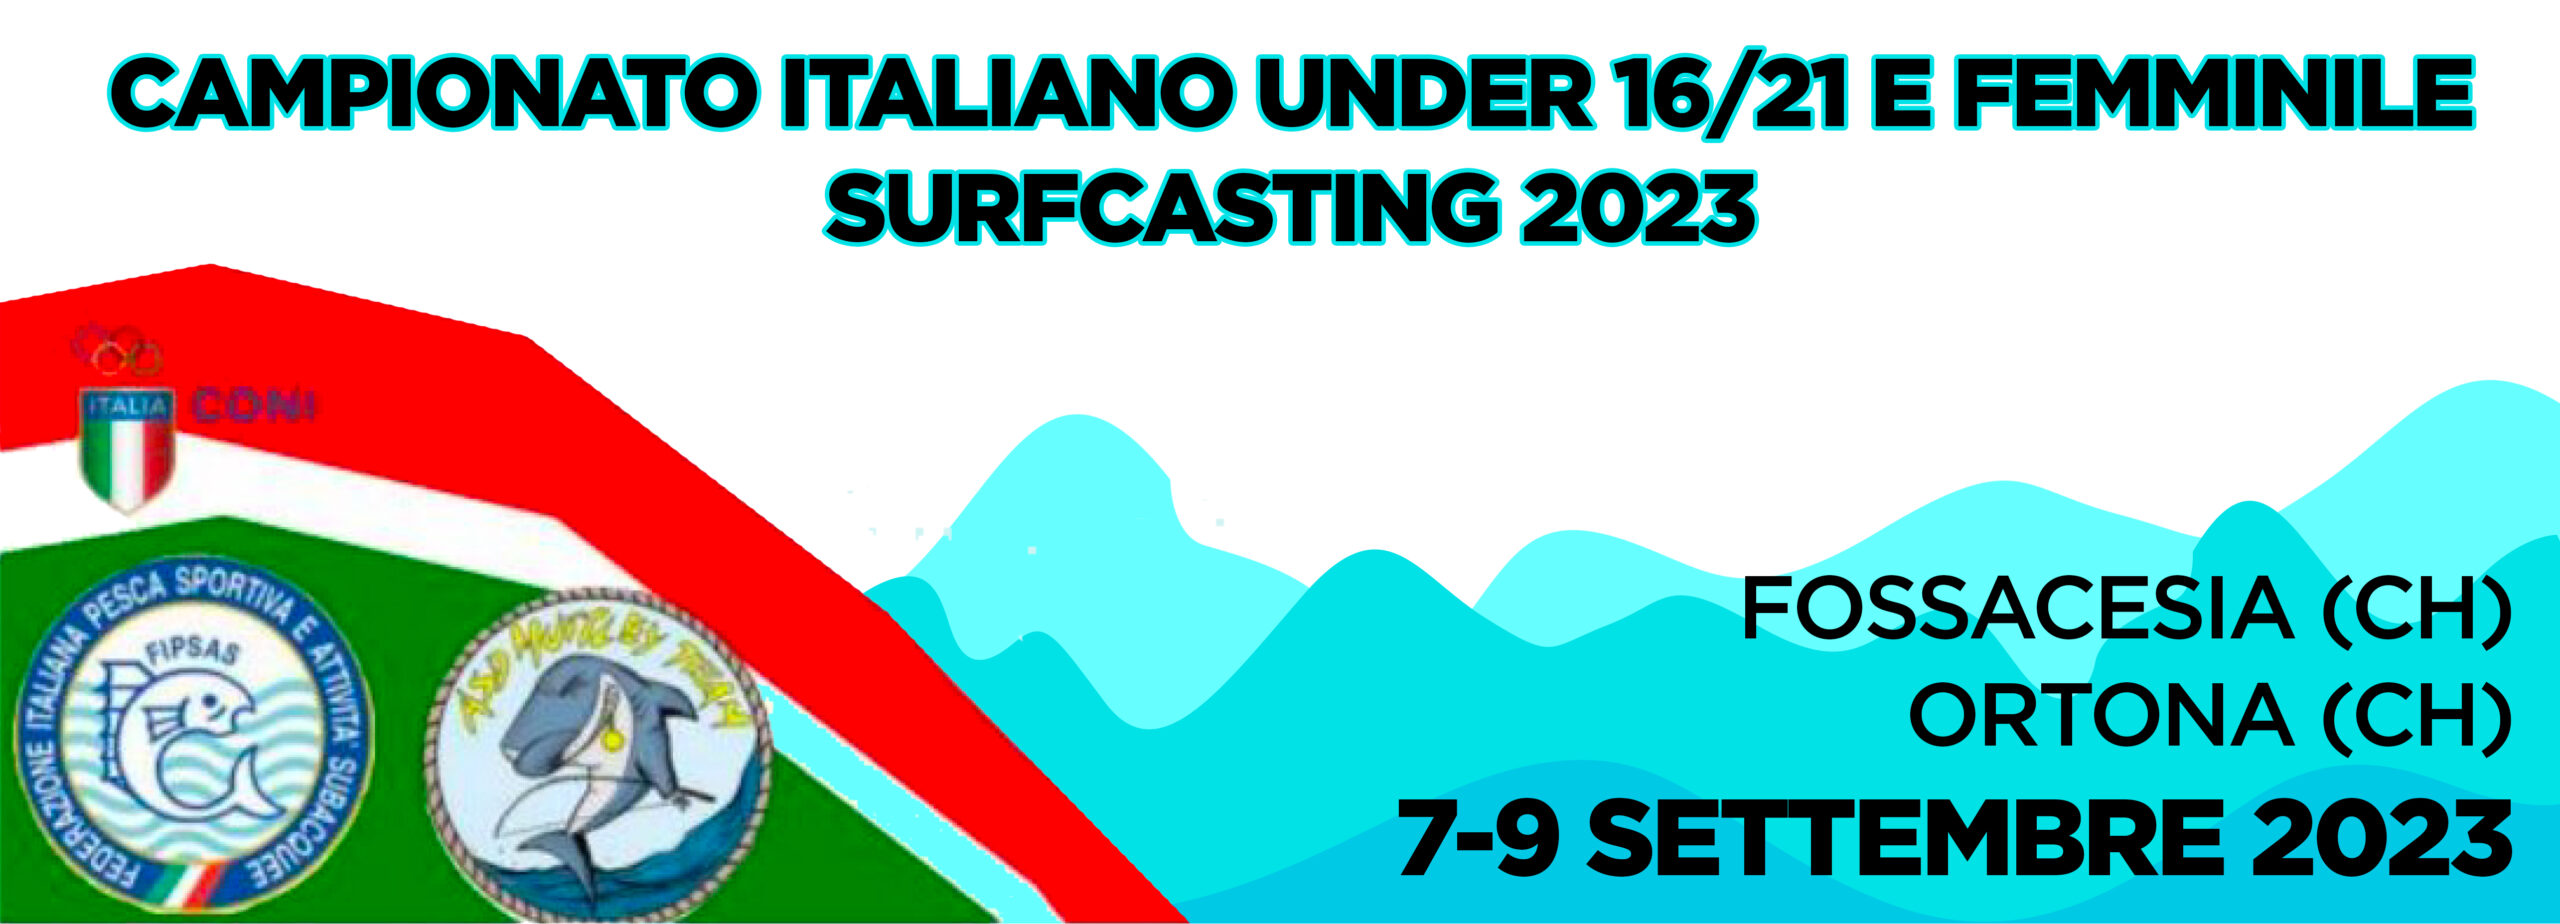 banner campionato italiano under 16/21 e femminile Surfcasting 2023